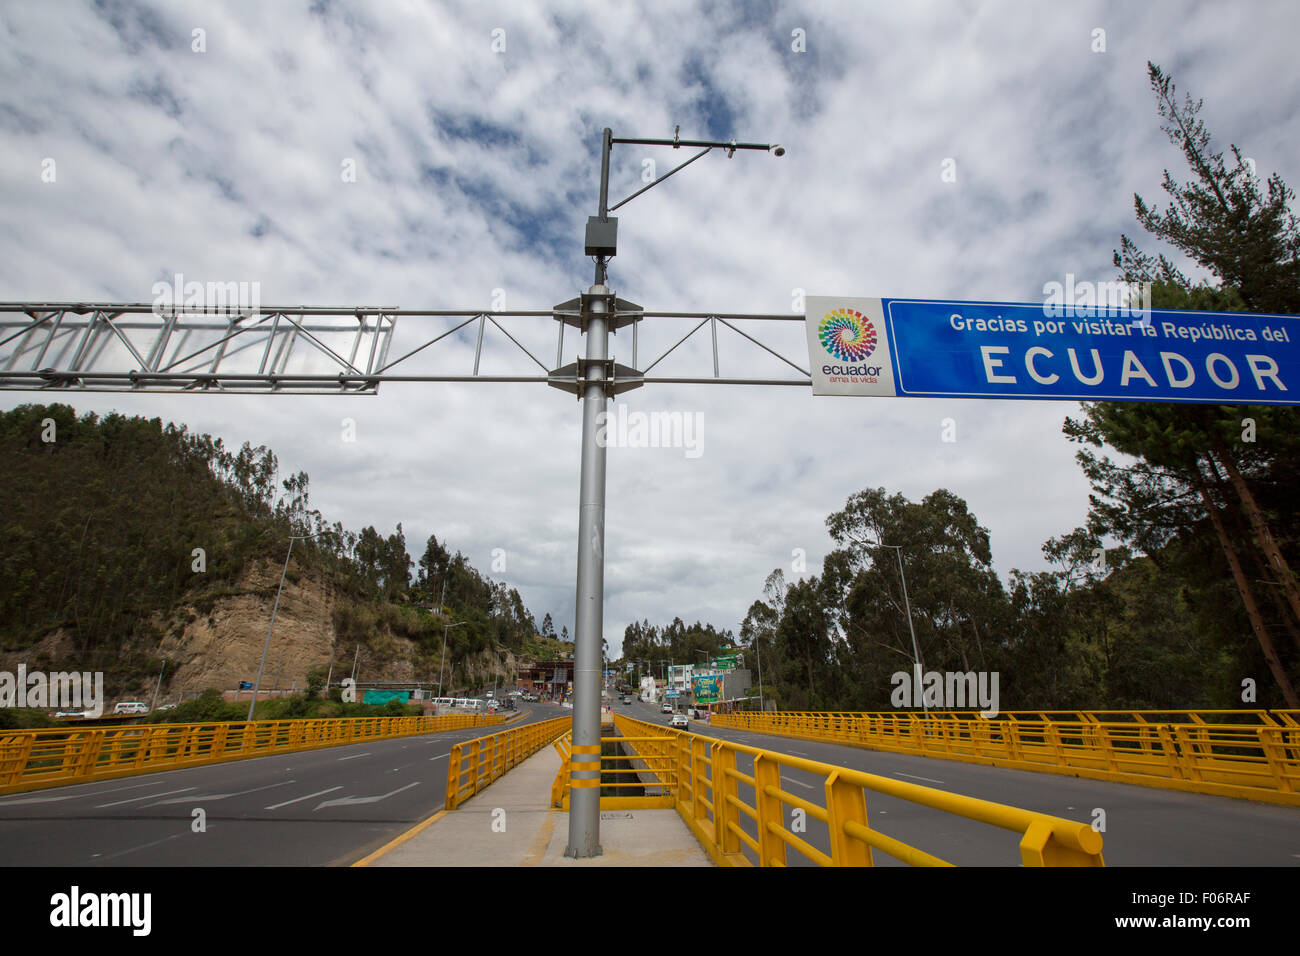 La frontière entre l'Équateur et la Colombie avec signe road stop. Equateur 2015 Banque D'Images